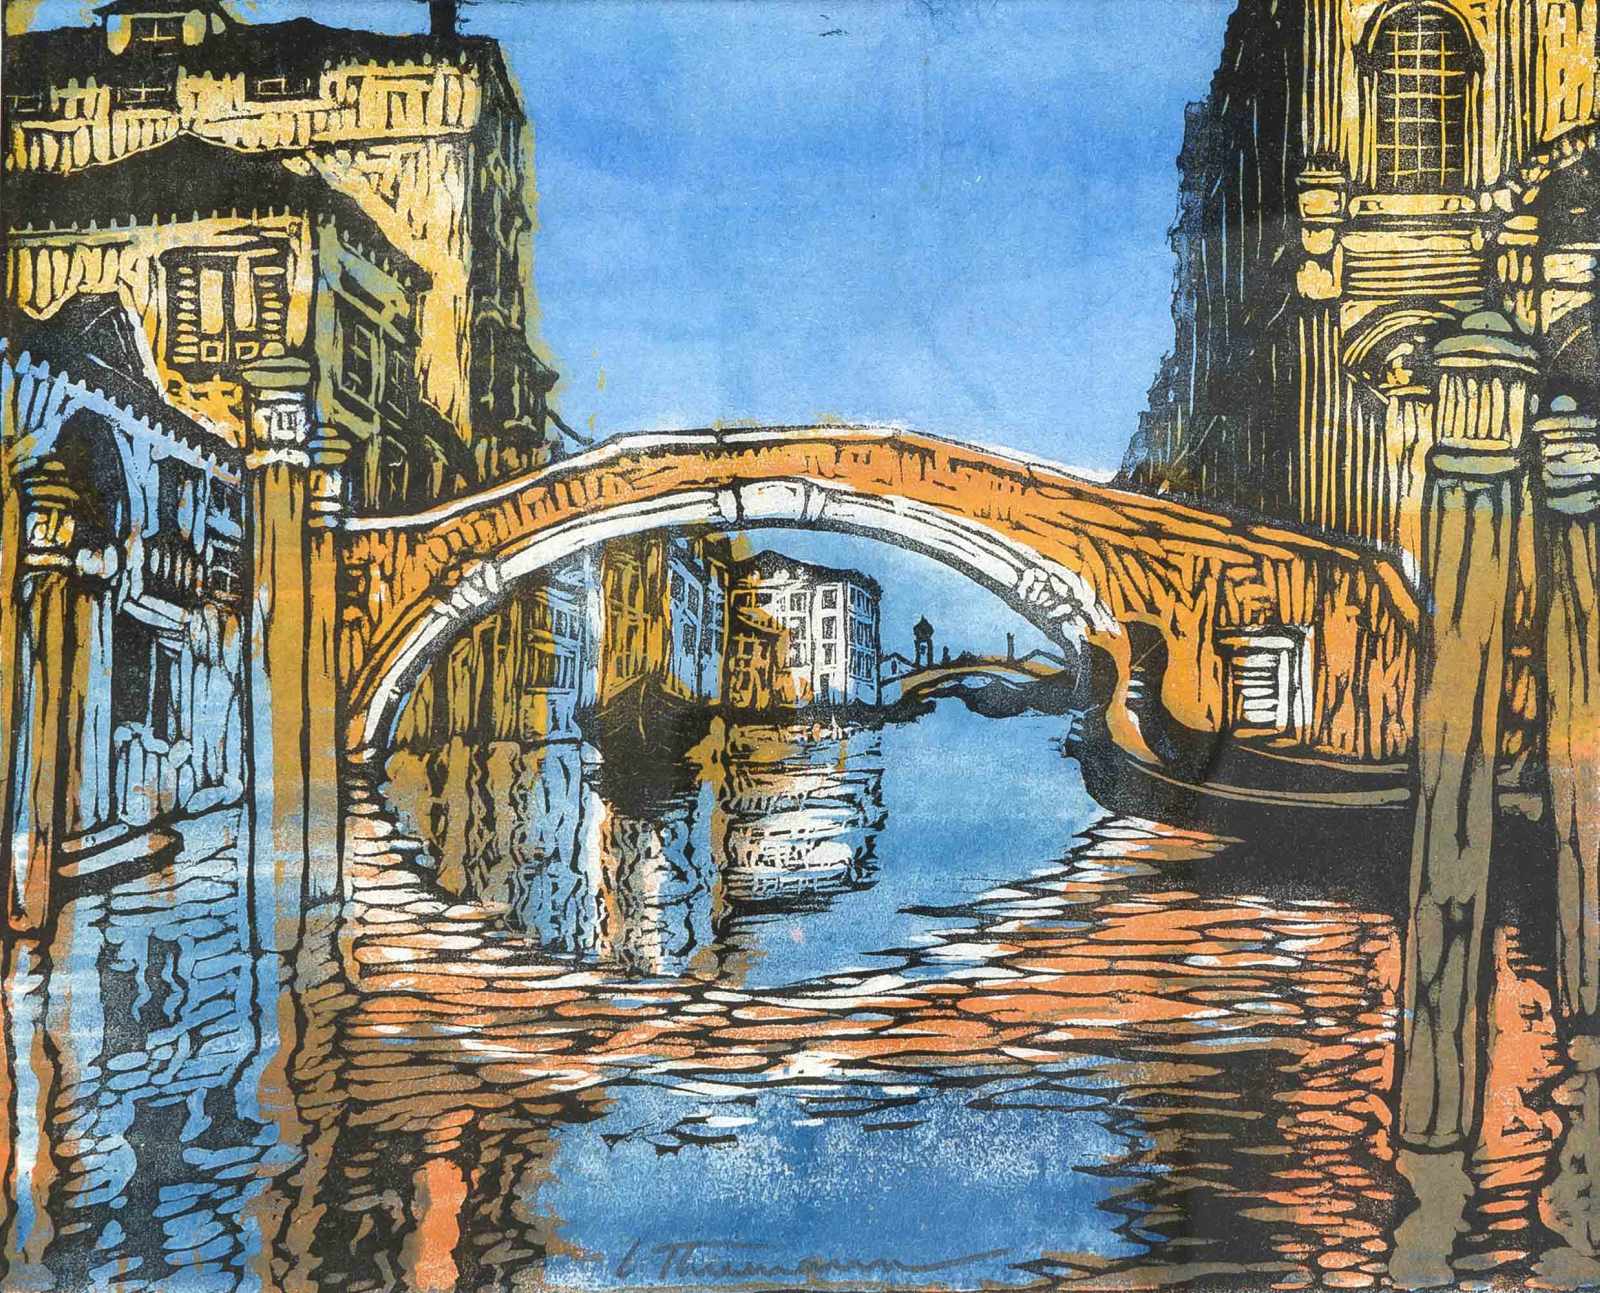 Carl Thiemann (1881-1966), Brücke in Venedig, Farbholzschnitt, u. mi. in der Darstellung mit